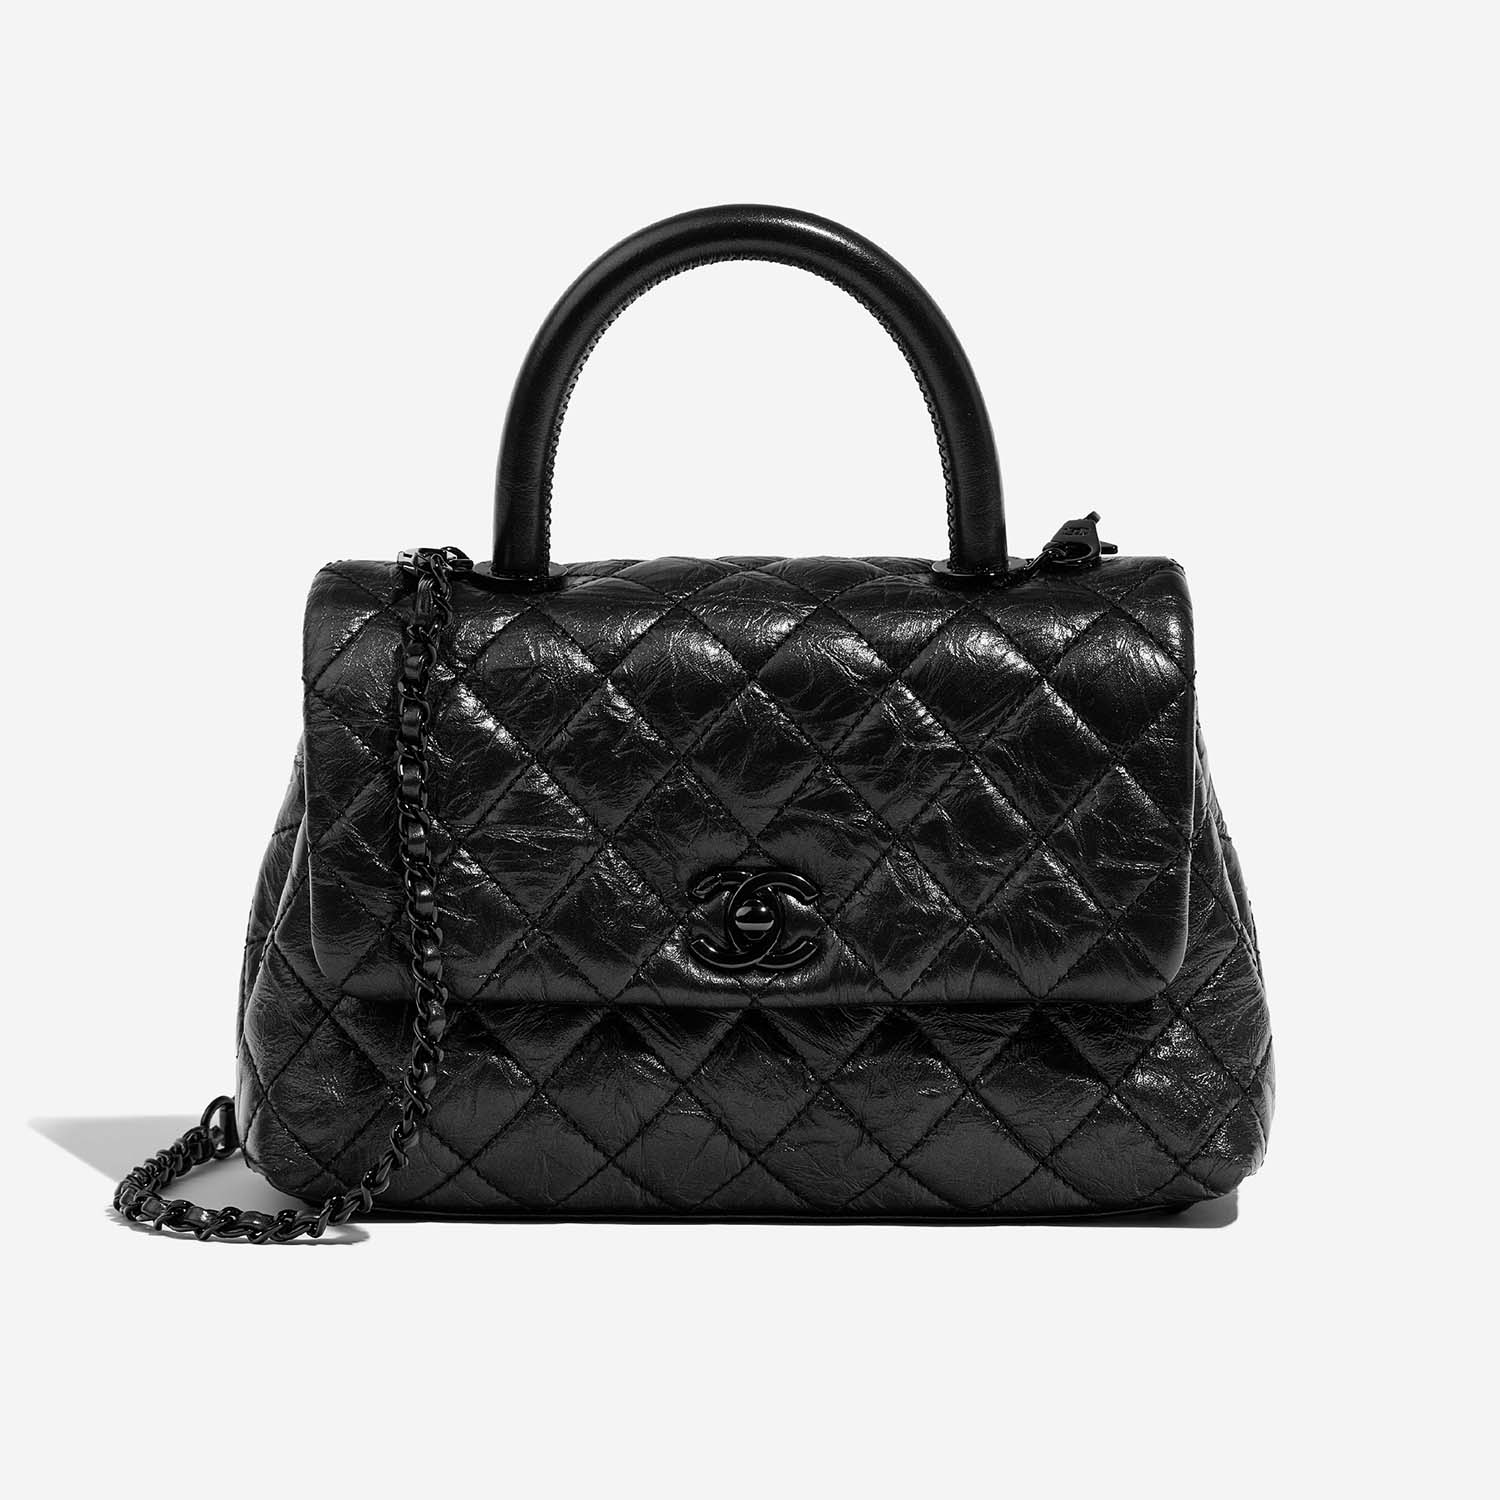 Chanel TimelessHandle Small Black 2F S | Verkaufen Sie Ihre Designer-Tasche auf Saclab.com